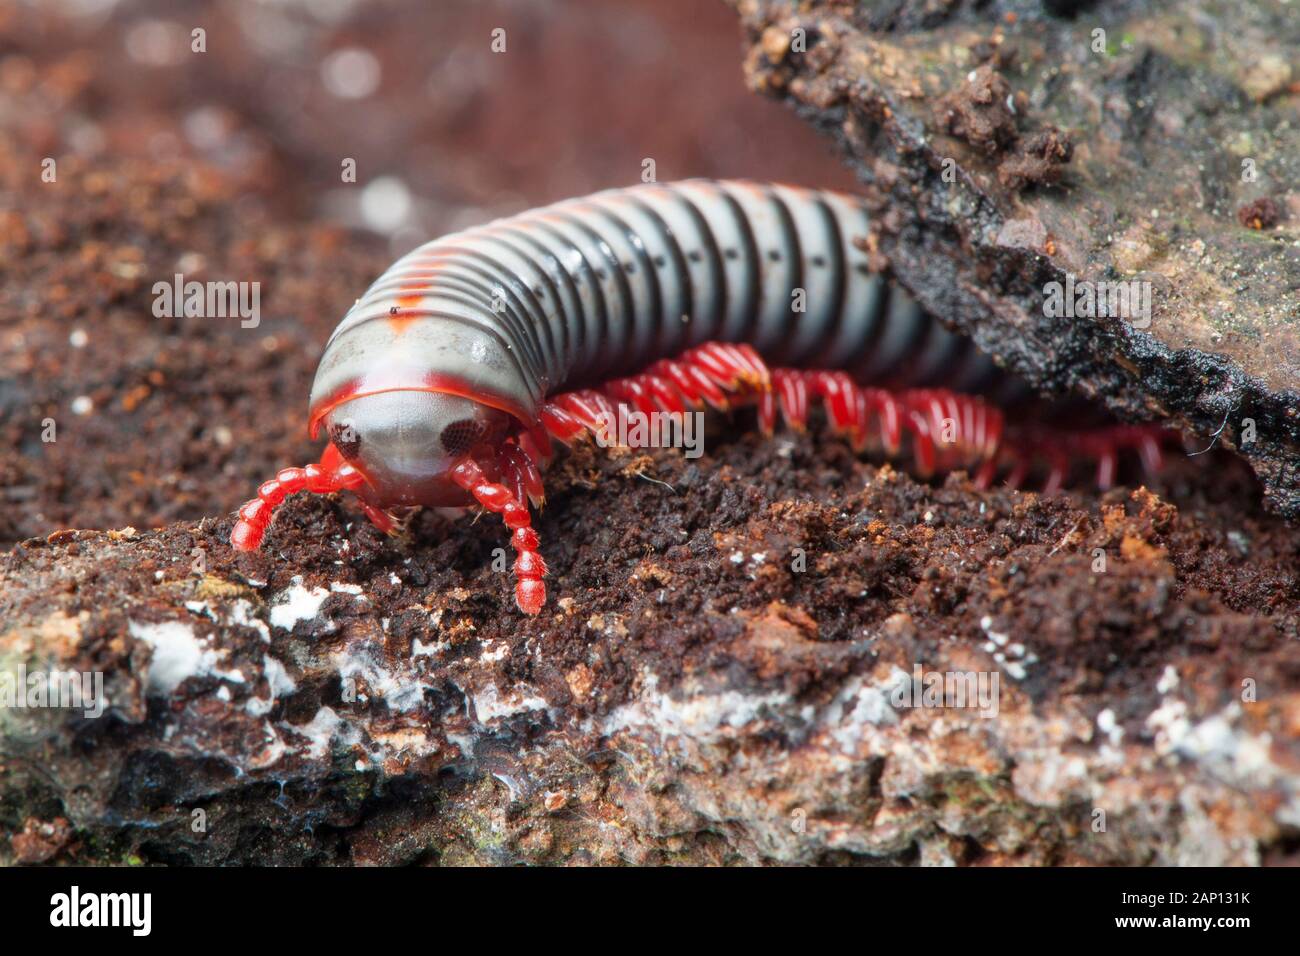 Rainbow Millipede (Tonkinbolus dollfusi) Stock Photo